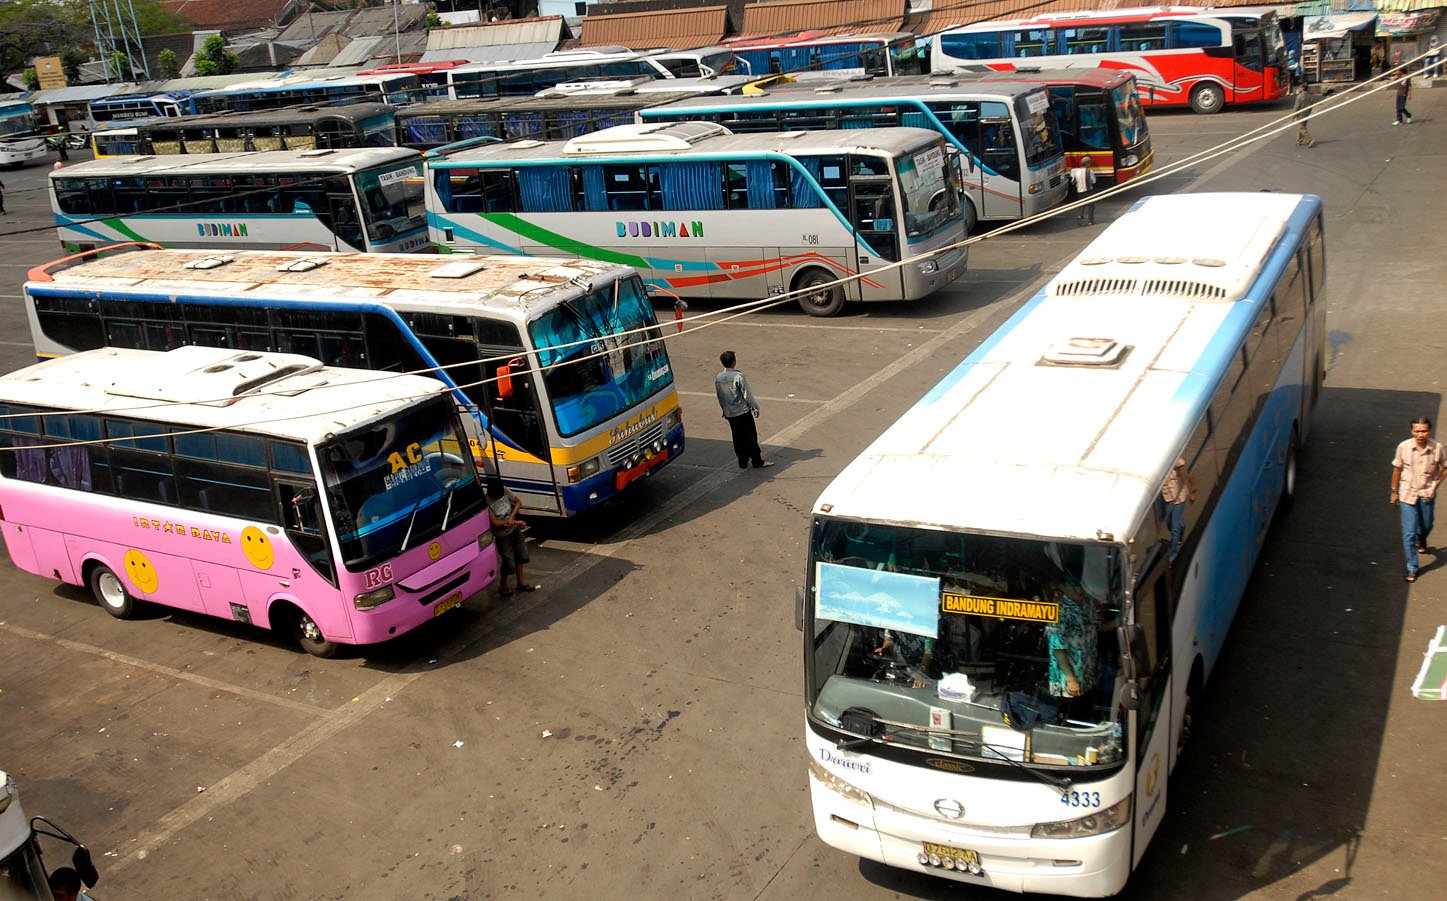  FOTO: Bantuan bus untuk pemda 637 unit